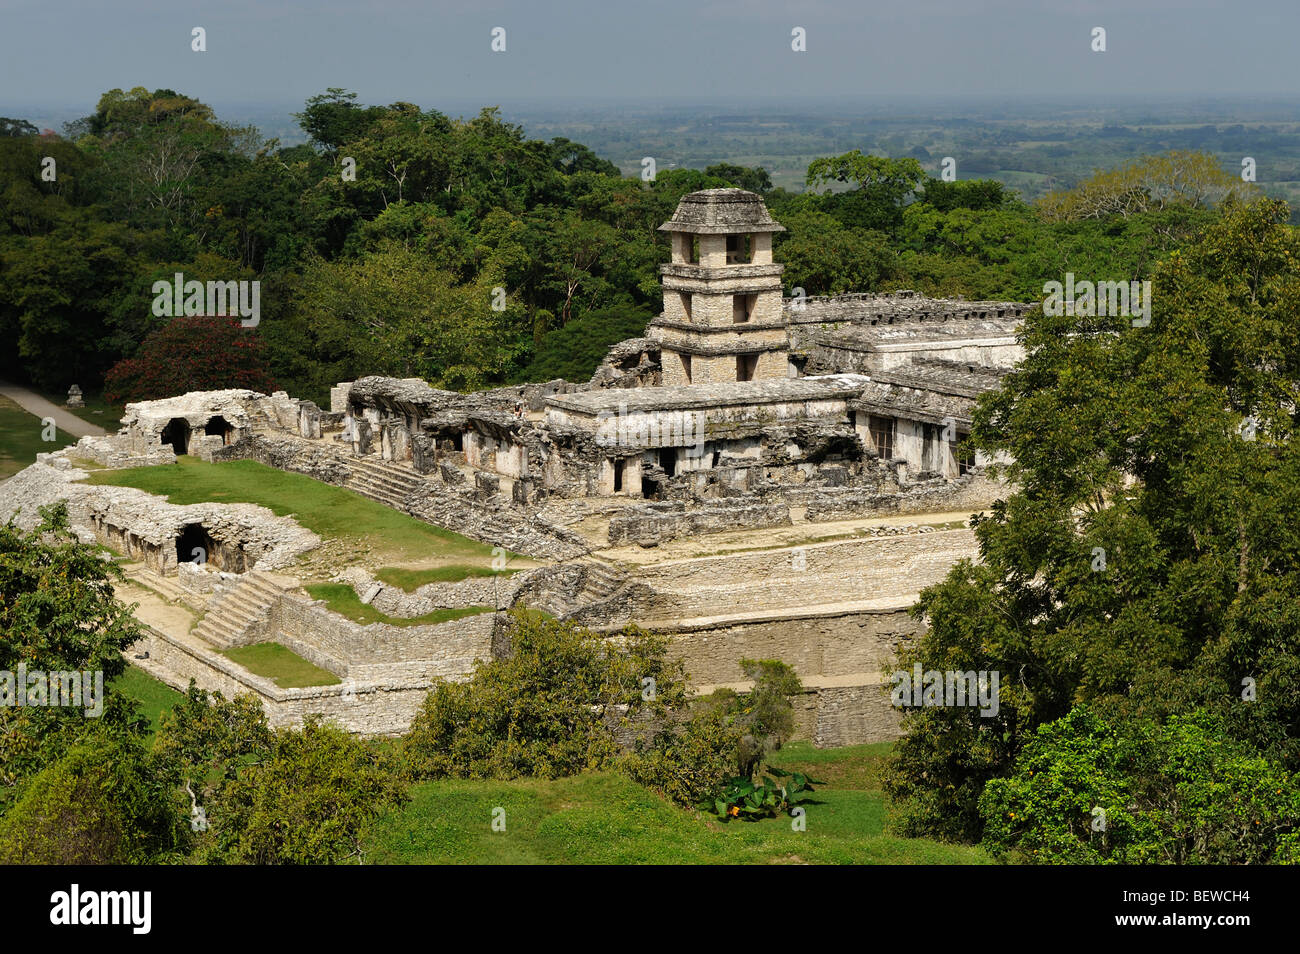 Ruine eines Maya-Palast in Palenque, Chiapas, Mexiko, erhöhten Blick Stockfoto